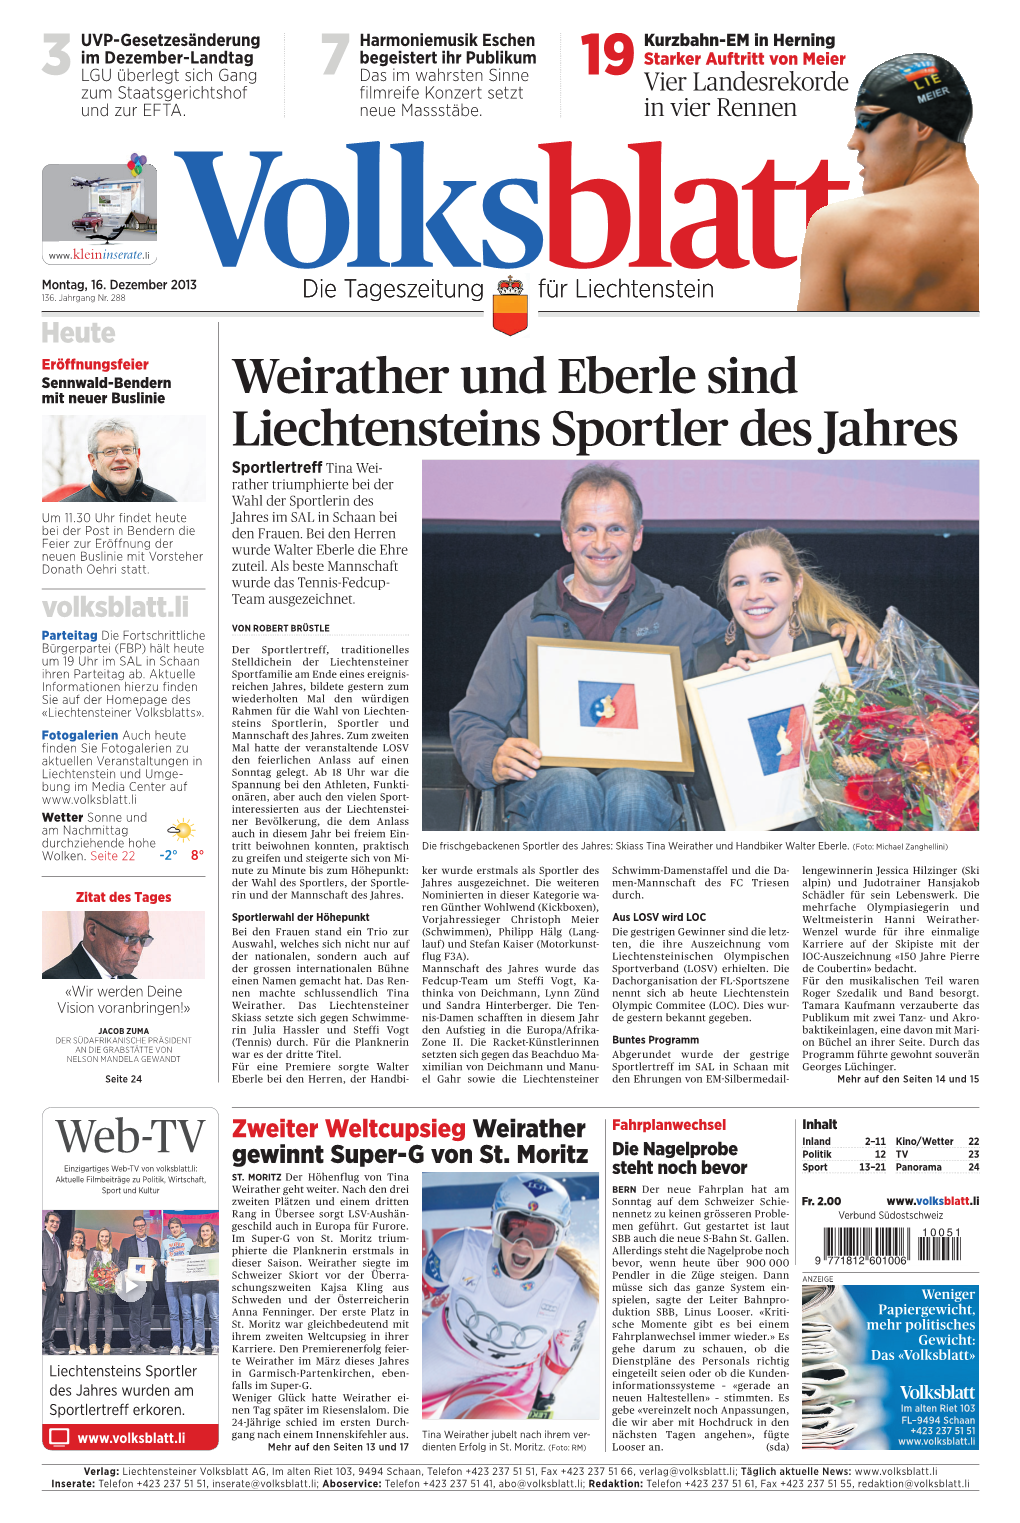 Weirather Und Eberle Sind Liechtensteins Sportler Des Jahres